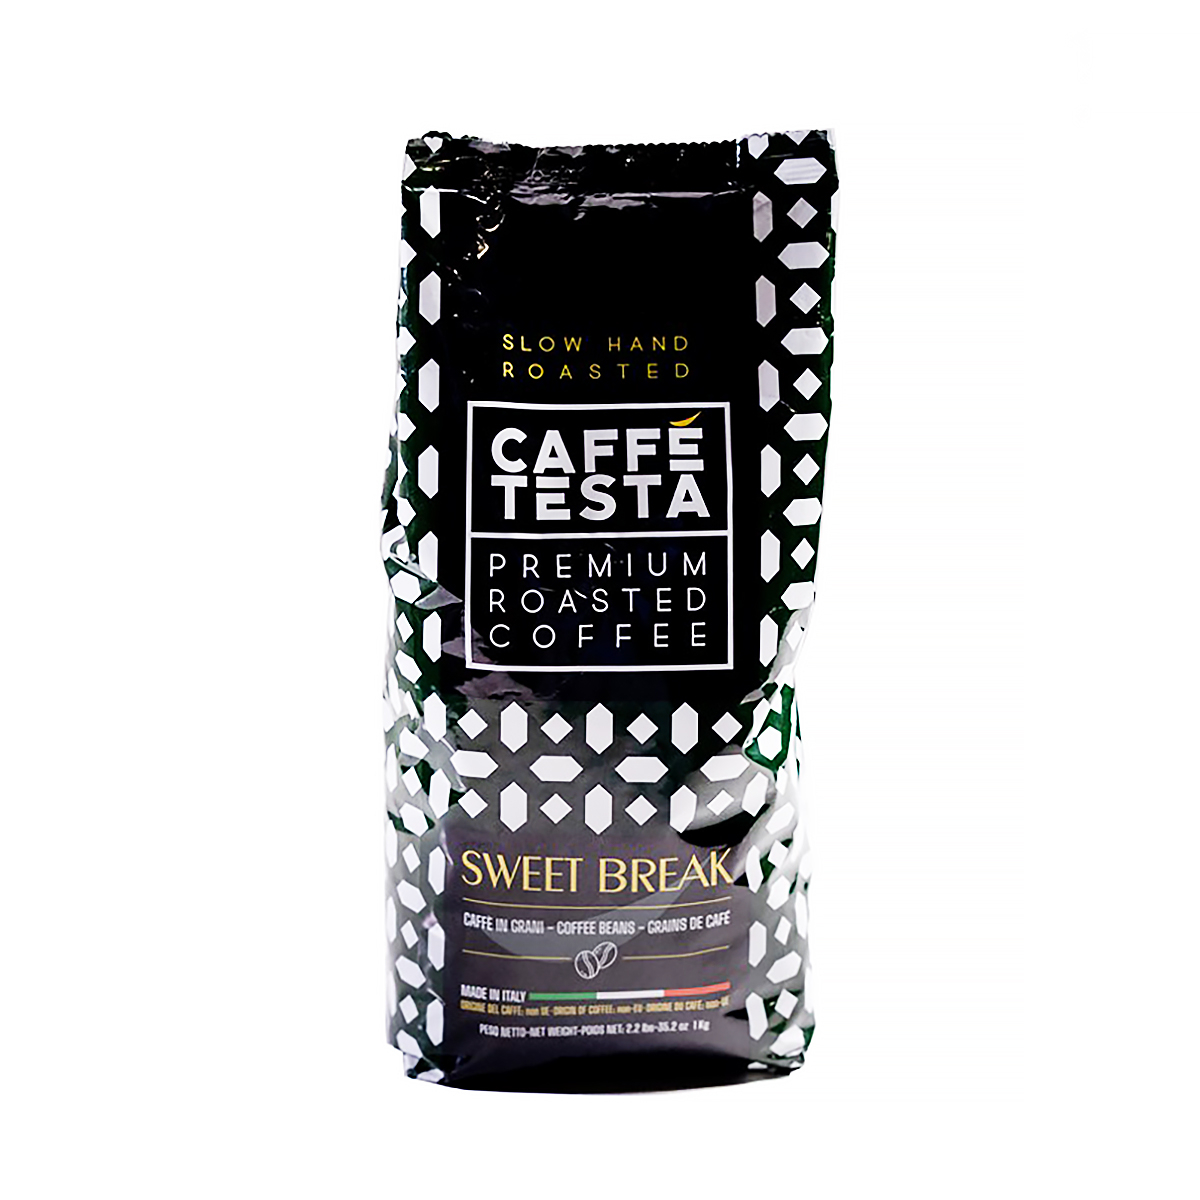 Кофе в зернах Caffe Testa Sweet Break, 1 кг кофе в зернах caffe testa bold 1 кг